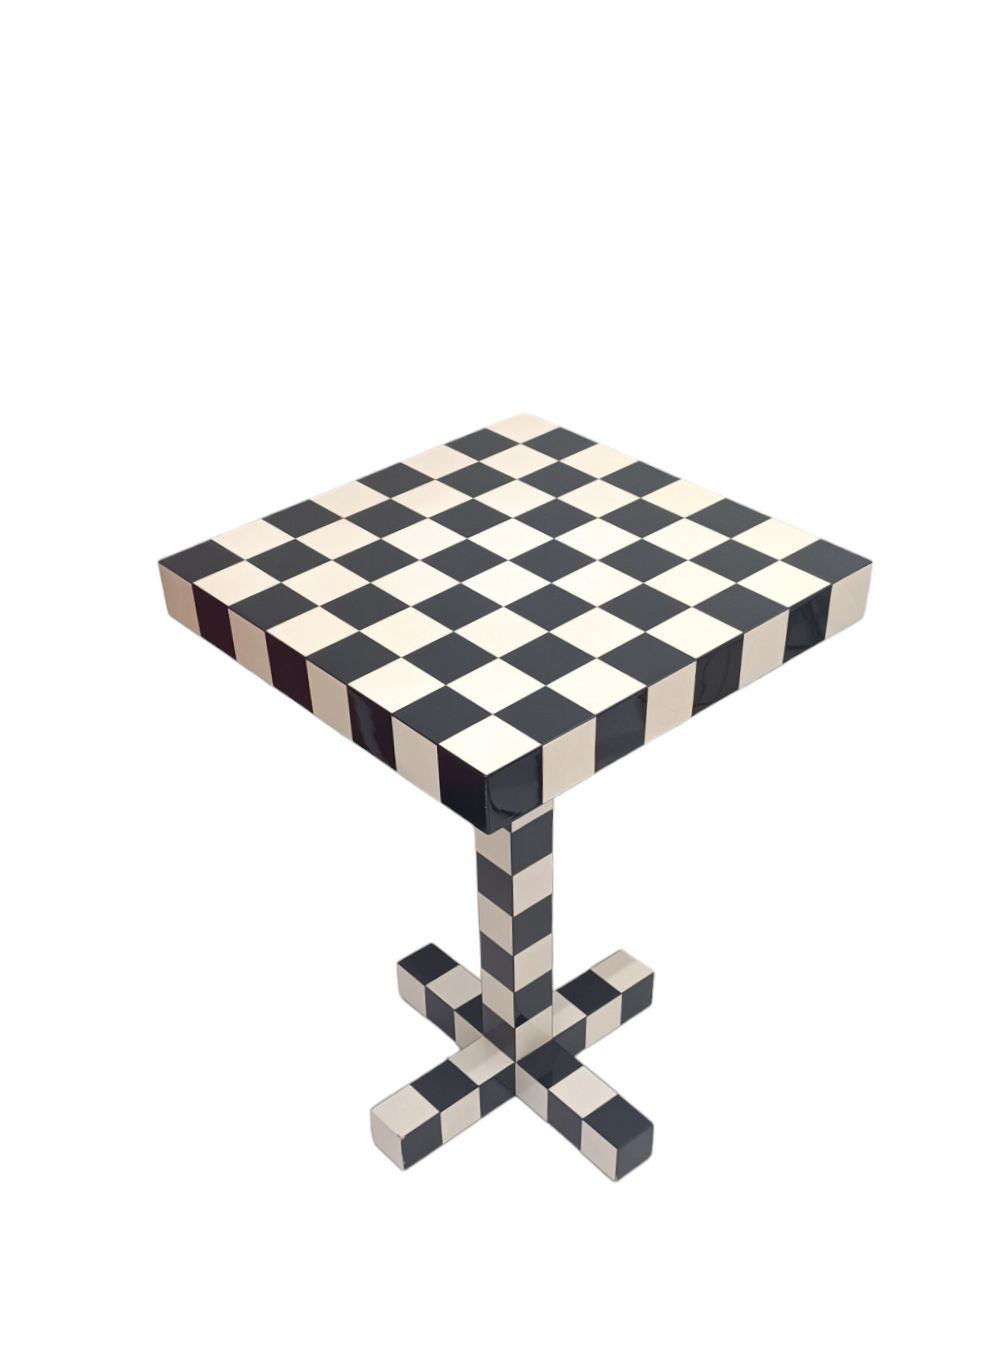 Šachový stolek - Moooi